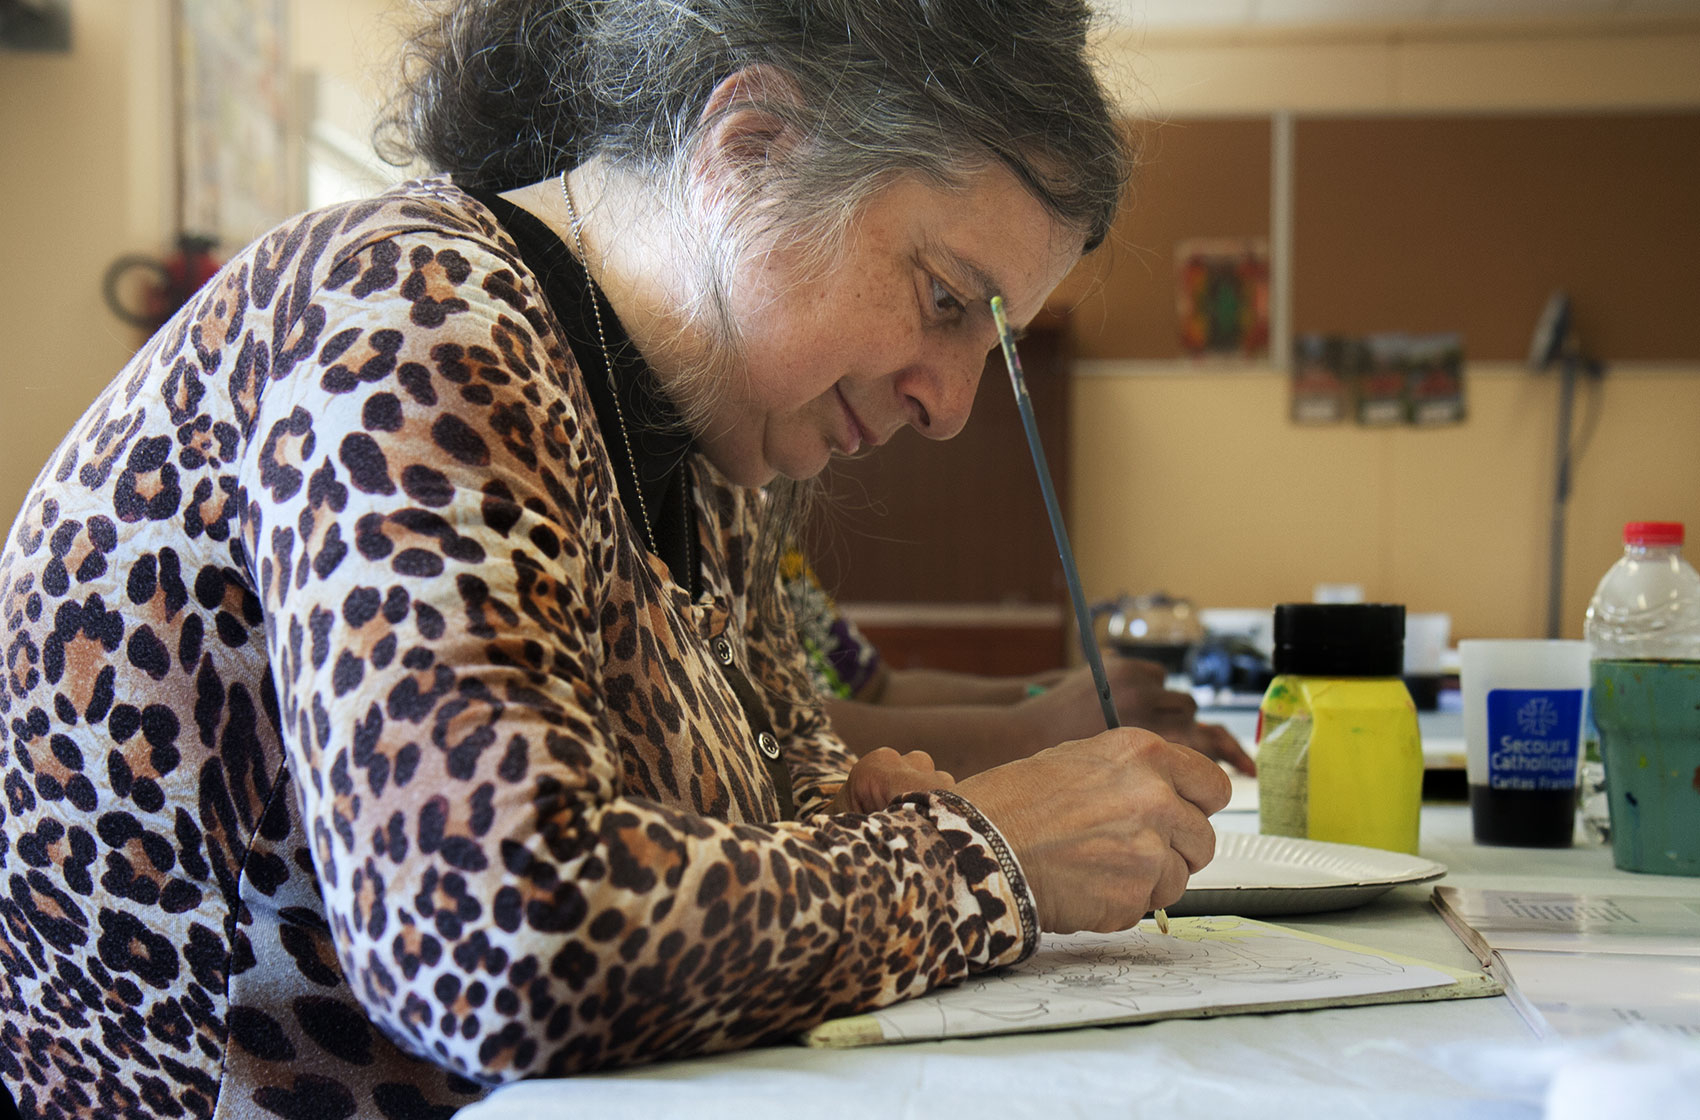 Dominique participe régulièrement à l'atelier peinture organisé au local du Secours Catholique de Rosny-sous-Bois (Seine-Saint-Denis) © Aurore Chaillou/Revue Projet